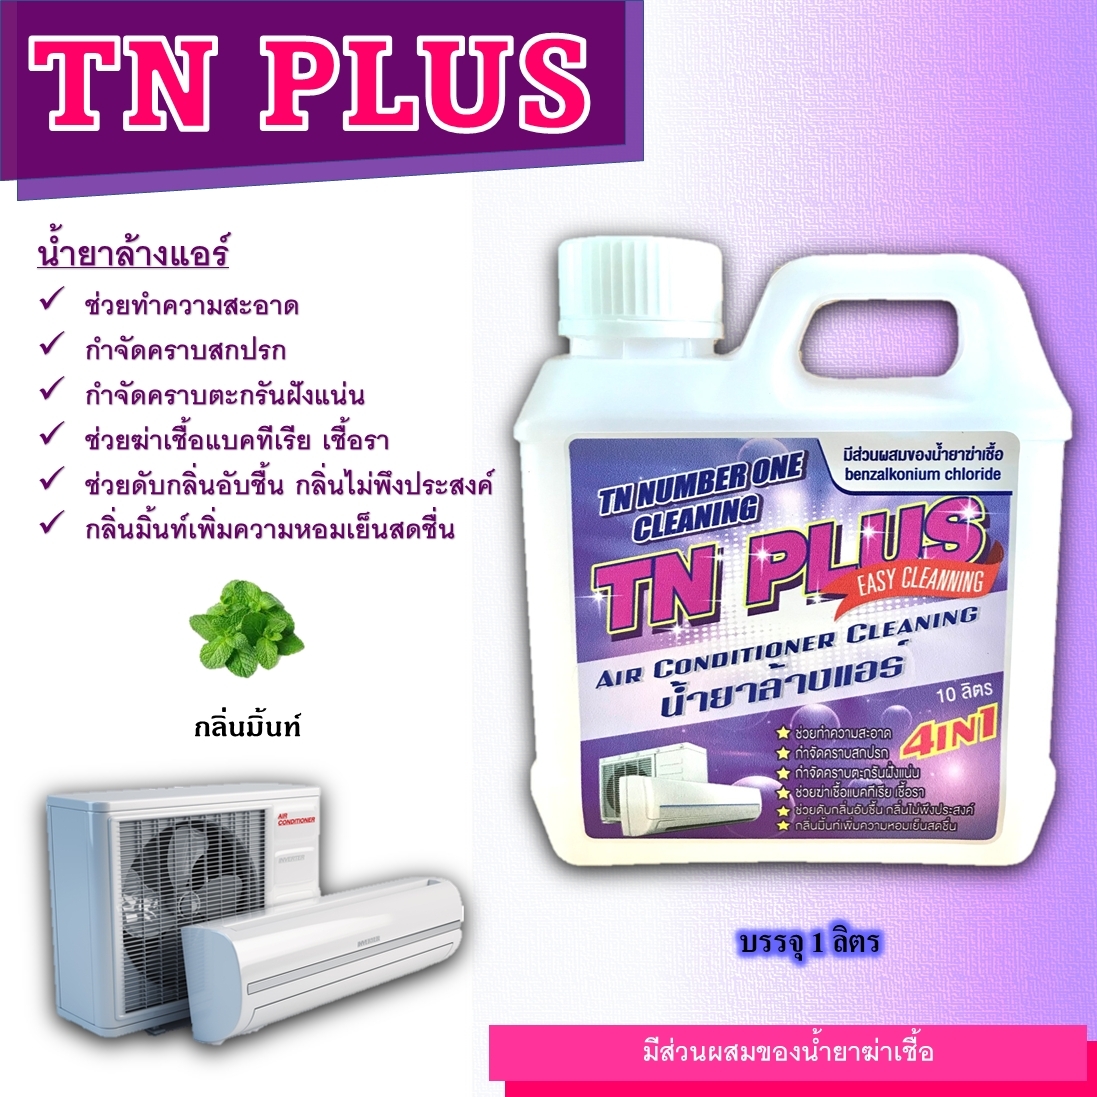 TN Plus น้ำบาล้างแอร์ชนิดแบบ4in1 ช่วยทำความสะอาด ช่วนฆ่าเชื้อแบคทีเรีย ช่วนดับกลิ่นไม่พึงประสงคกลิ่นมิ้นหอมเย็นสดชื่นล้างเองได้ง้ายง่ายได้ด้วยตนเอง